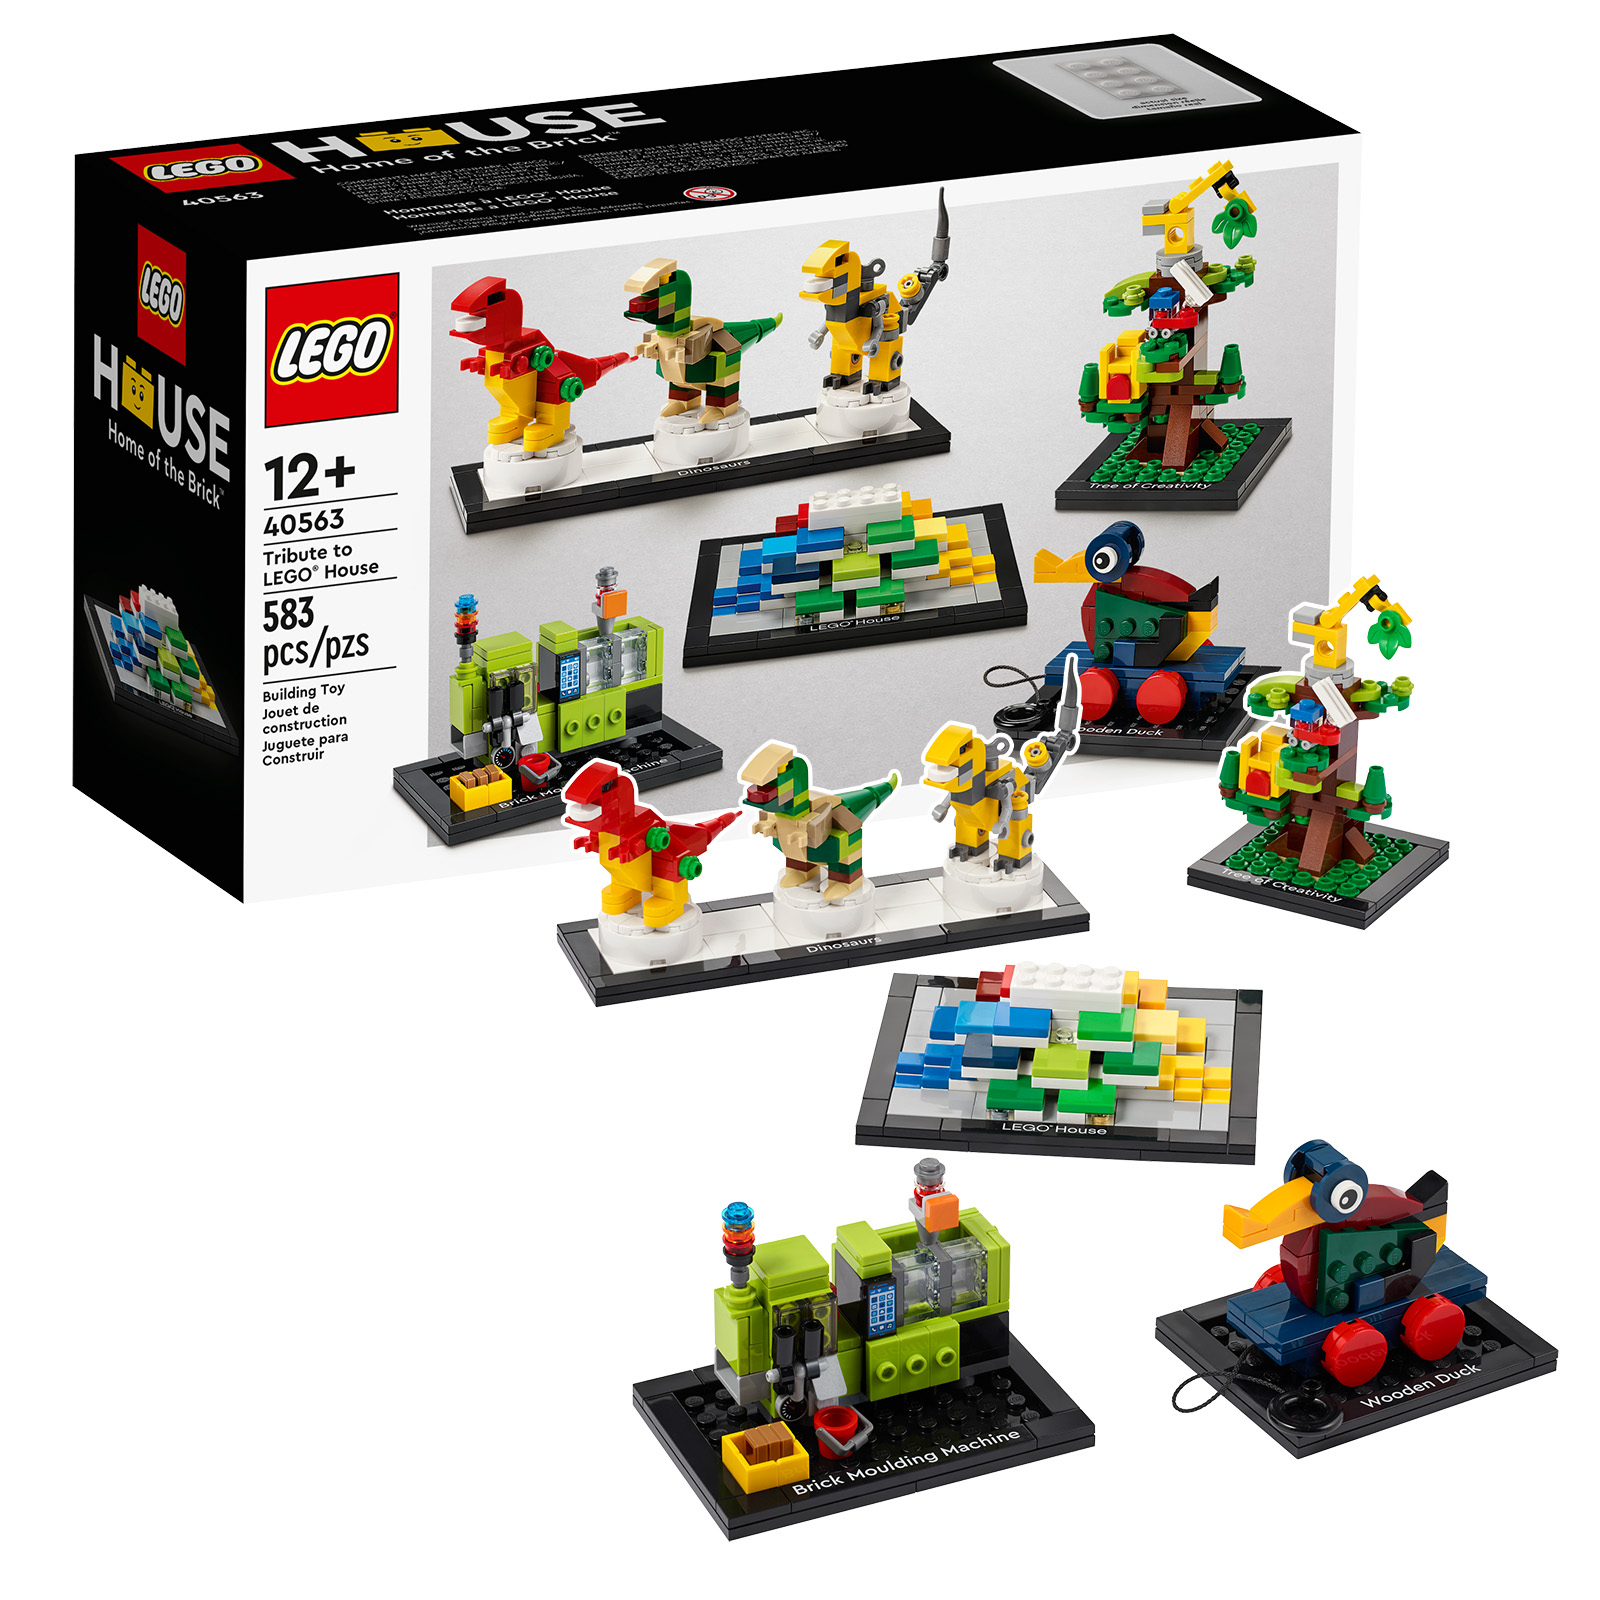 Muistutus: viimeiset tunnit saada kopio LEGO 40563 Tribute to LEGO House -setistä